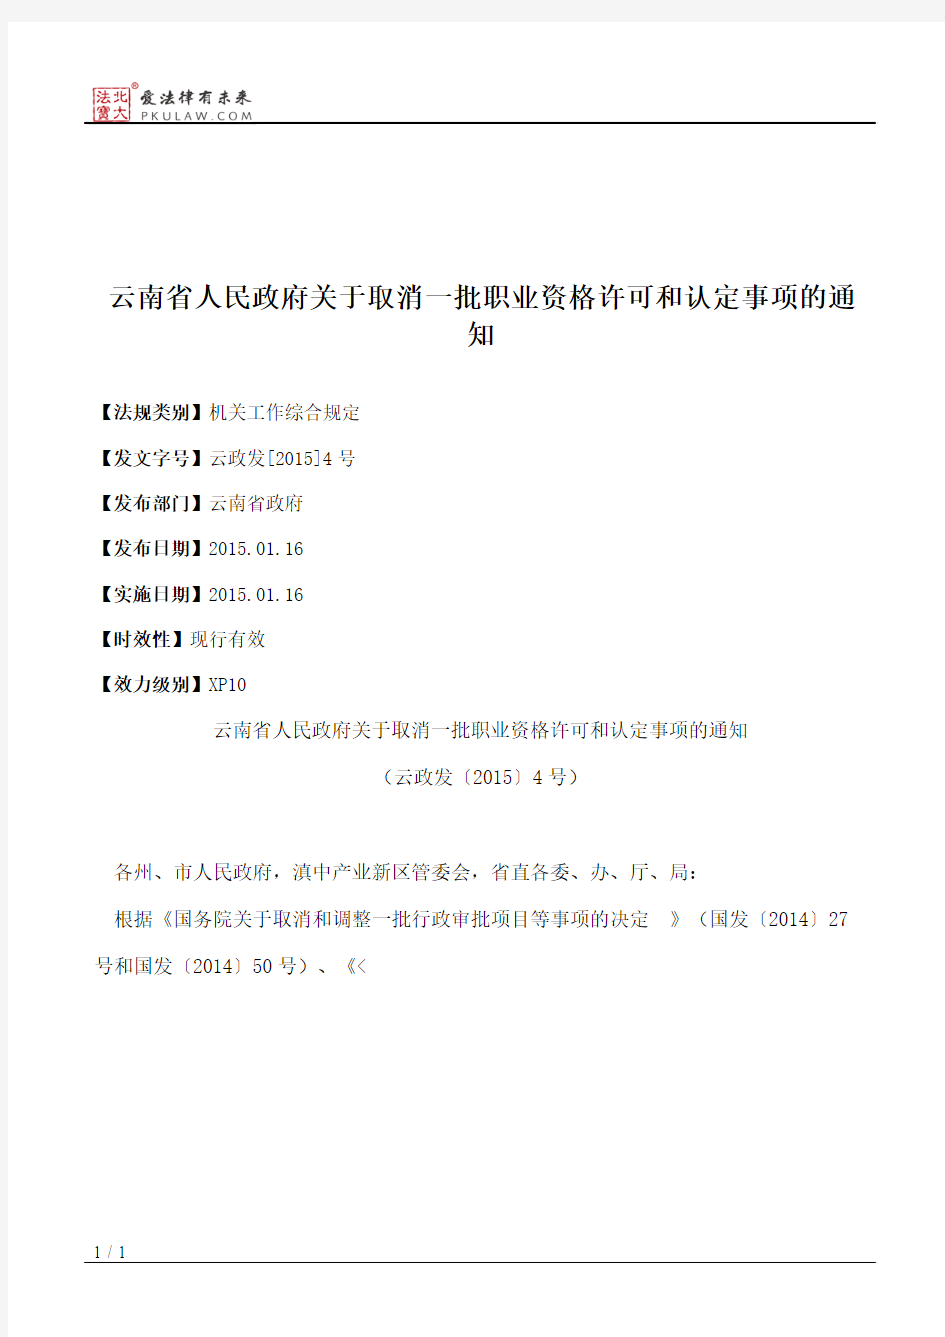 云南省人民政府关于取消一批职业资格许可和认定事项的通知